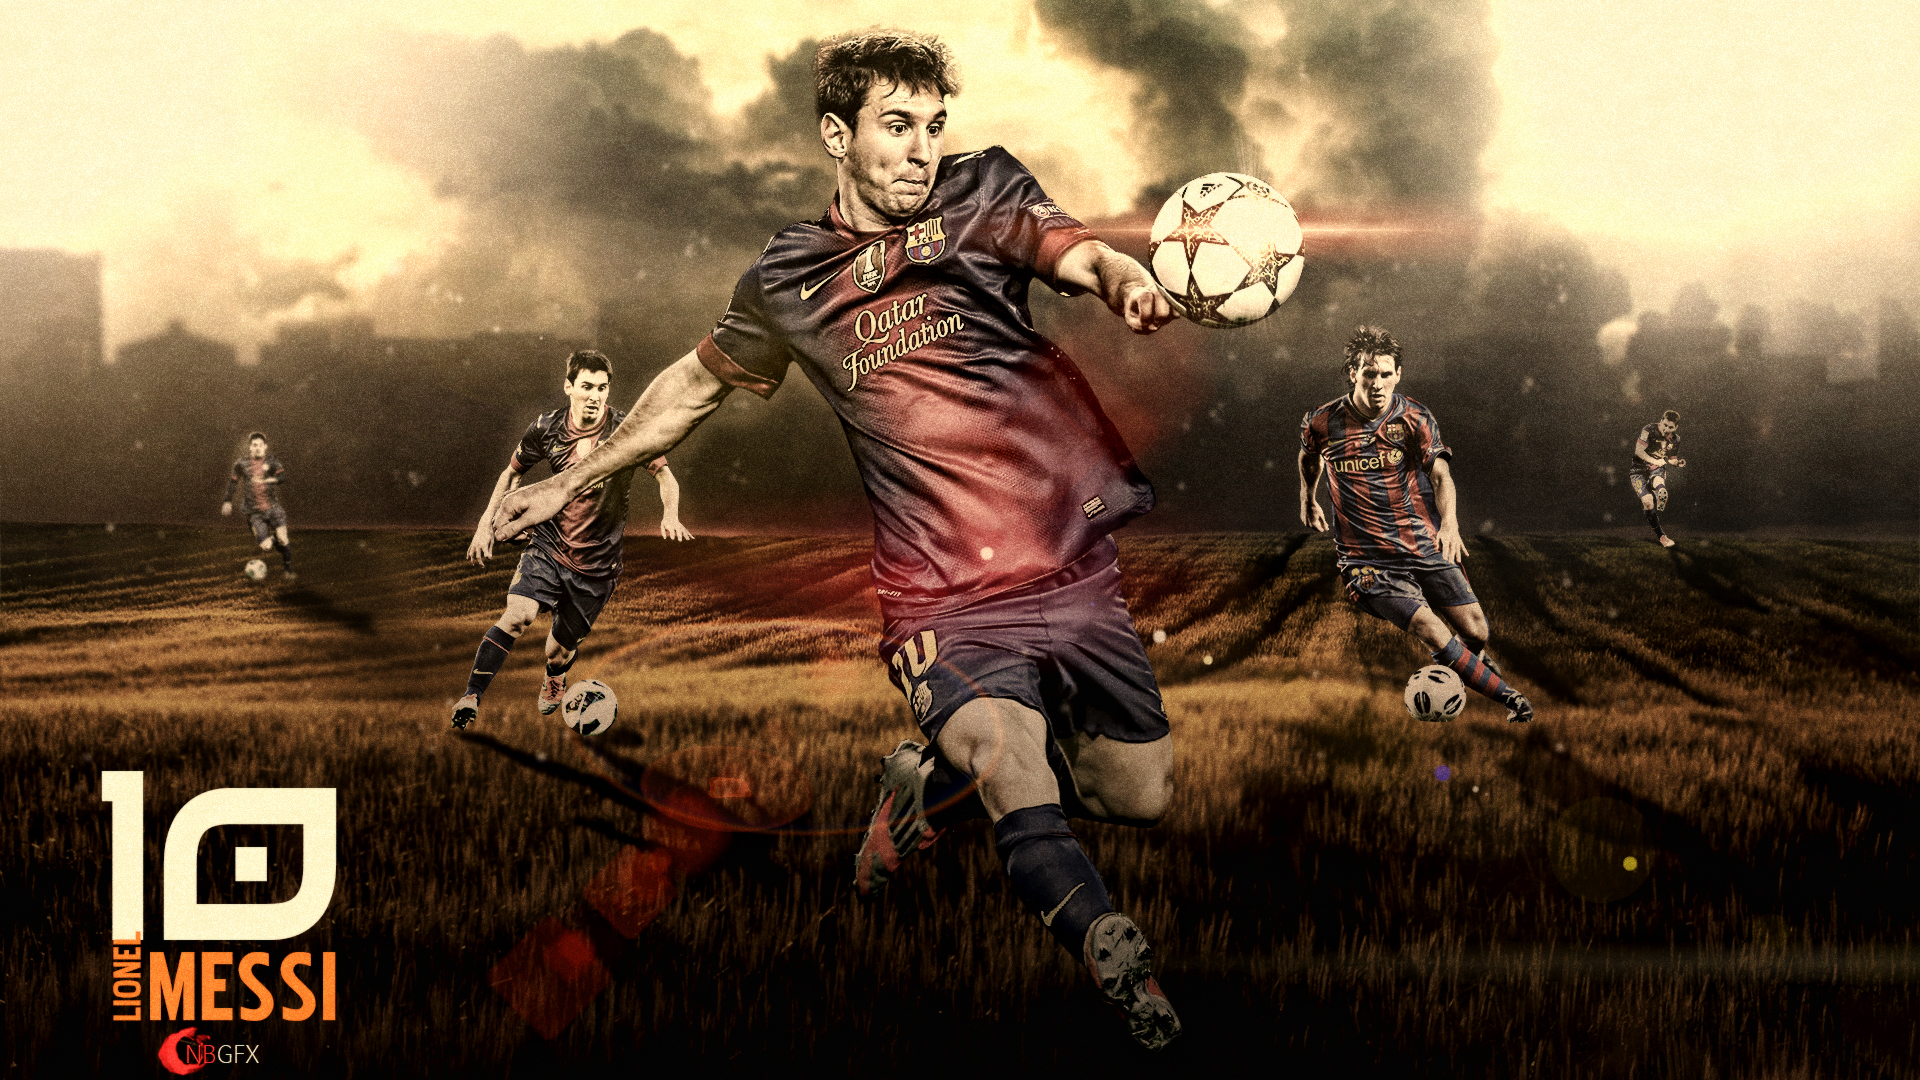 Baixar papel de parede para celular de Esportes, Futebol, Fc Barcelona, Lionel Messi gratuito.